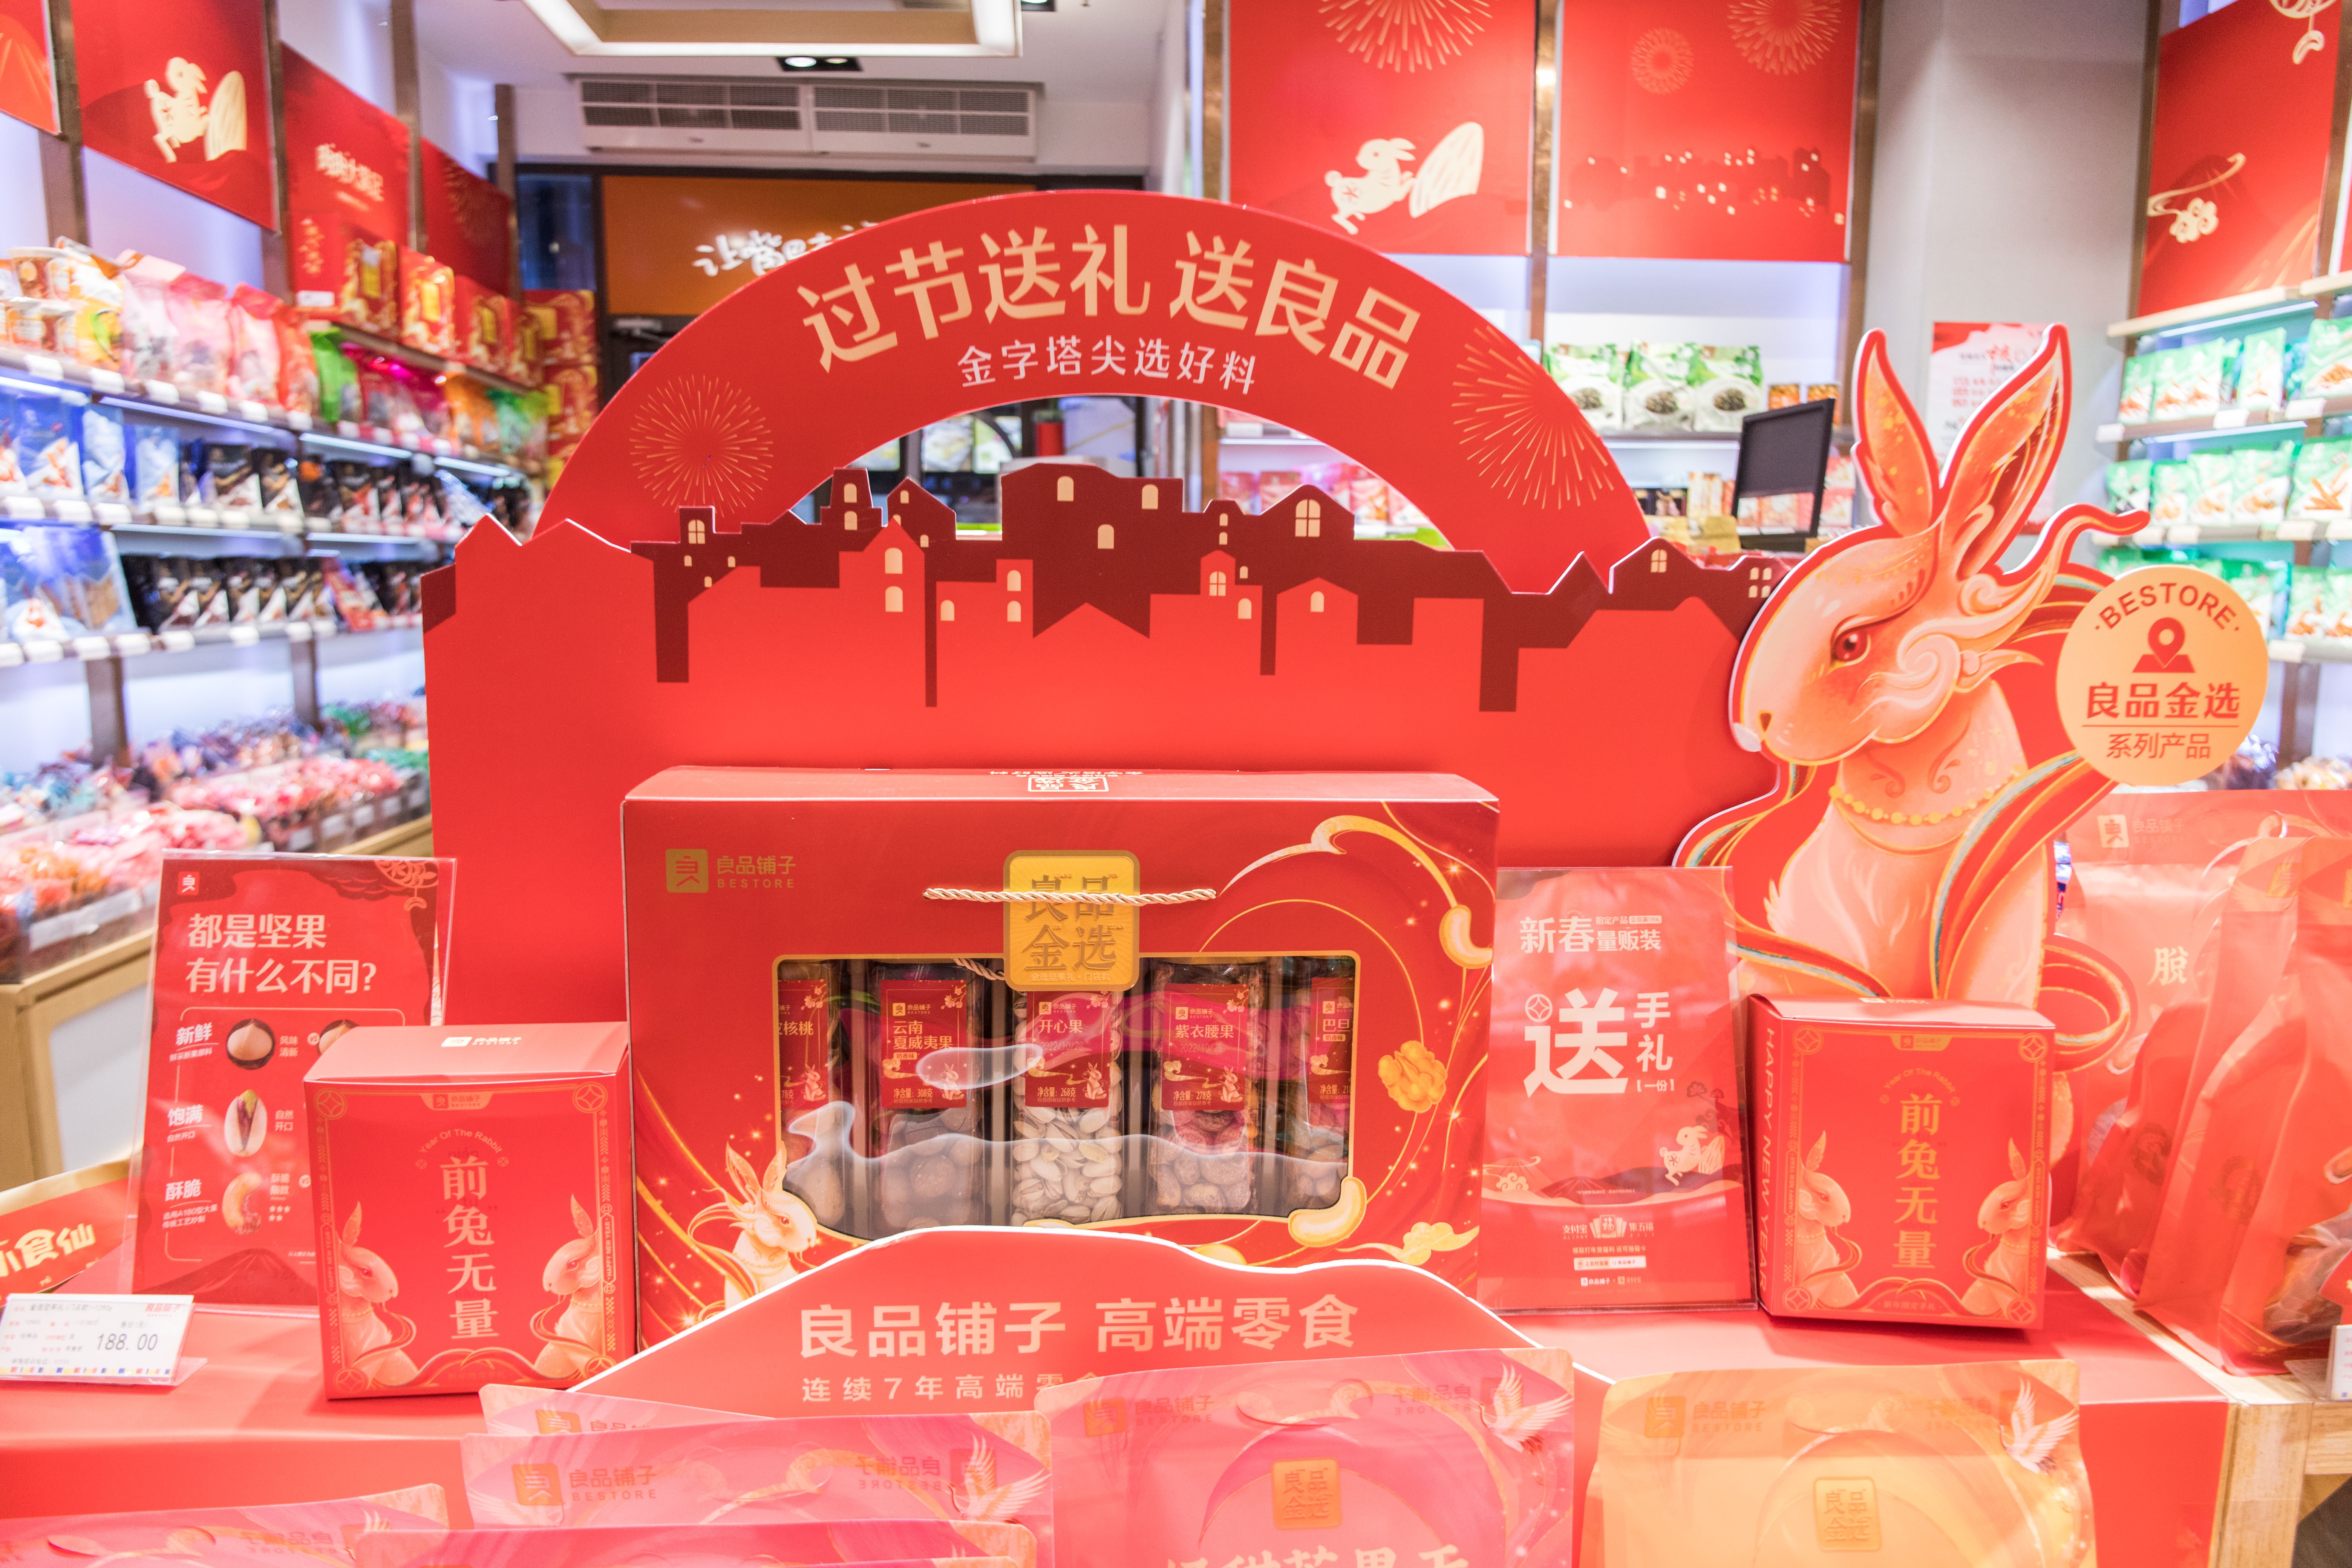 良品铺子再度成为春节“现象级”年货 礼盒全行业销量第一